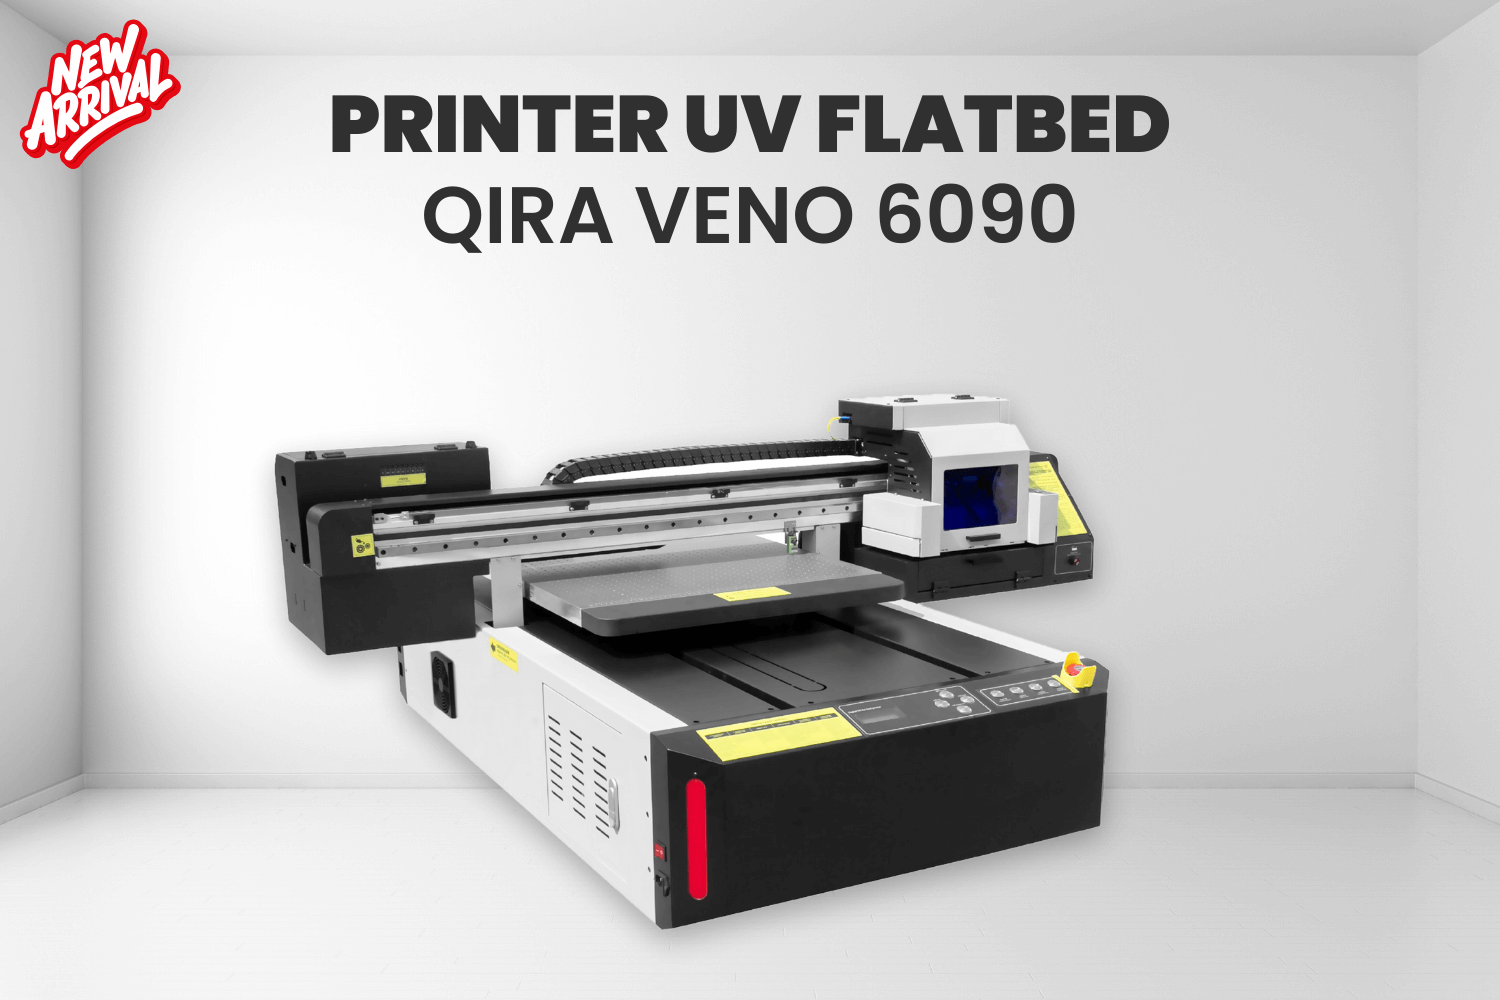 Printer Uv Flatbed Qira Veno 6090